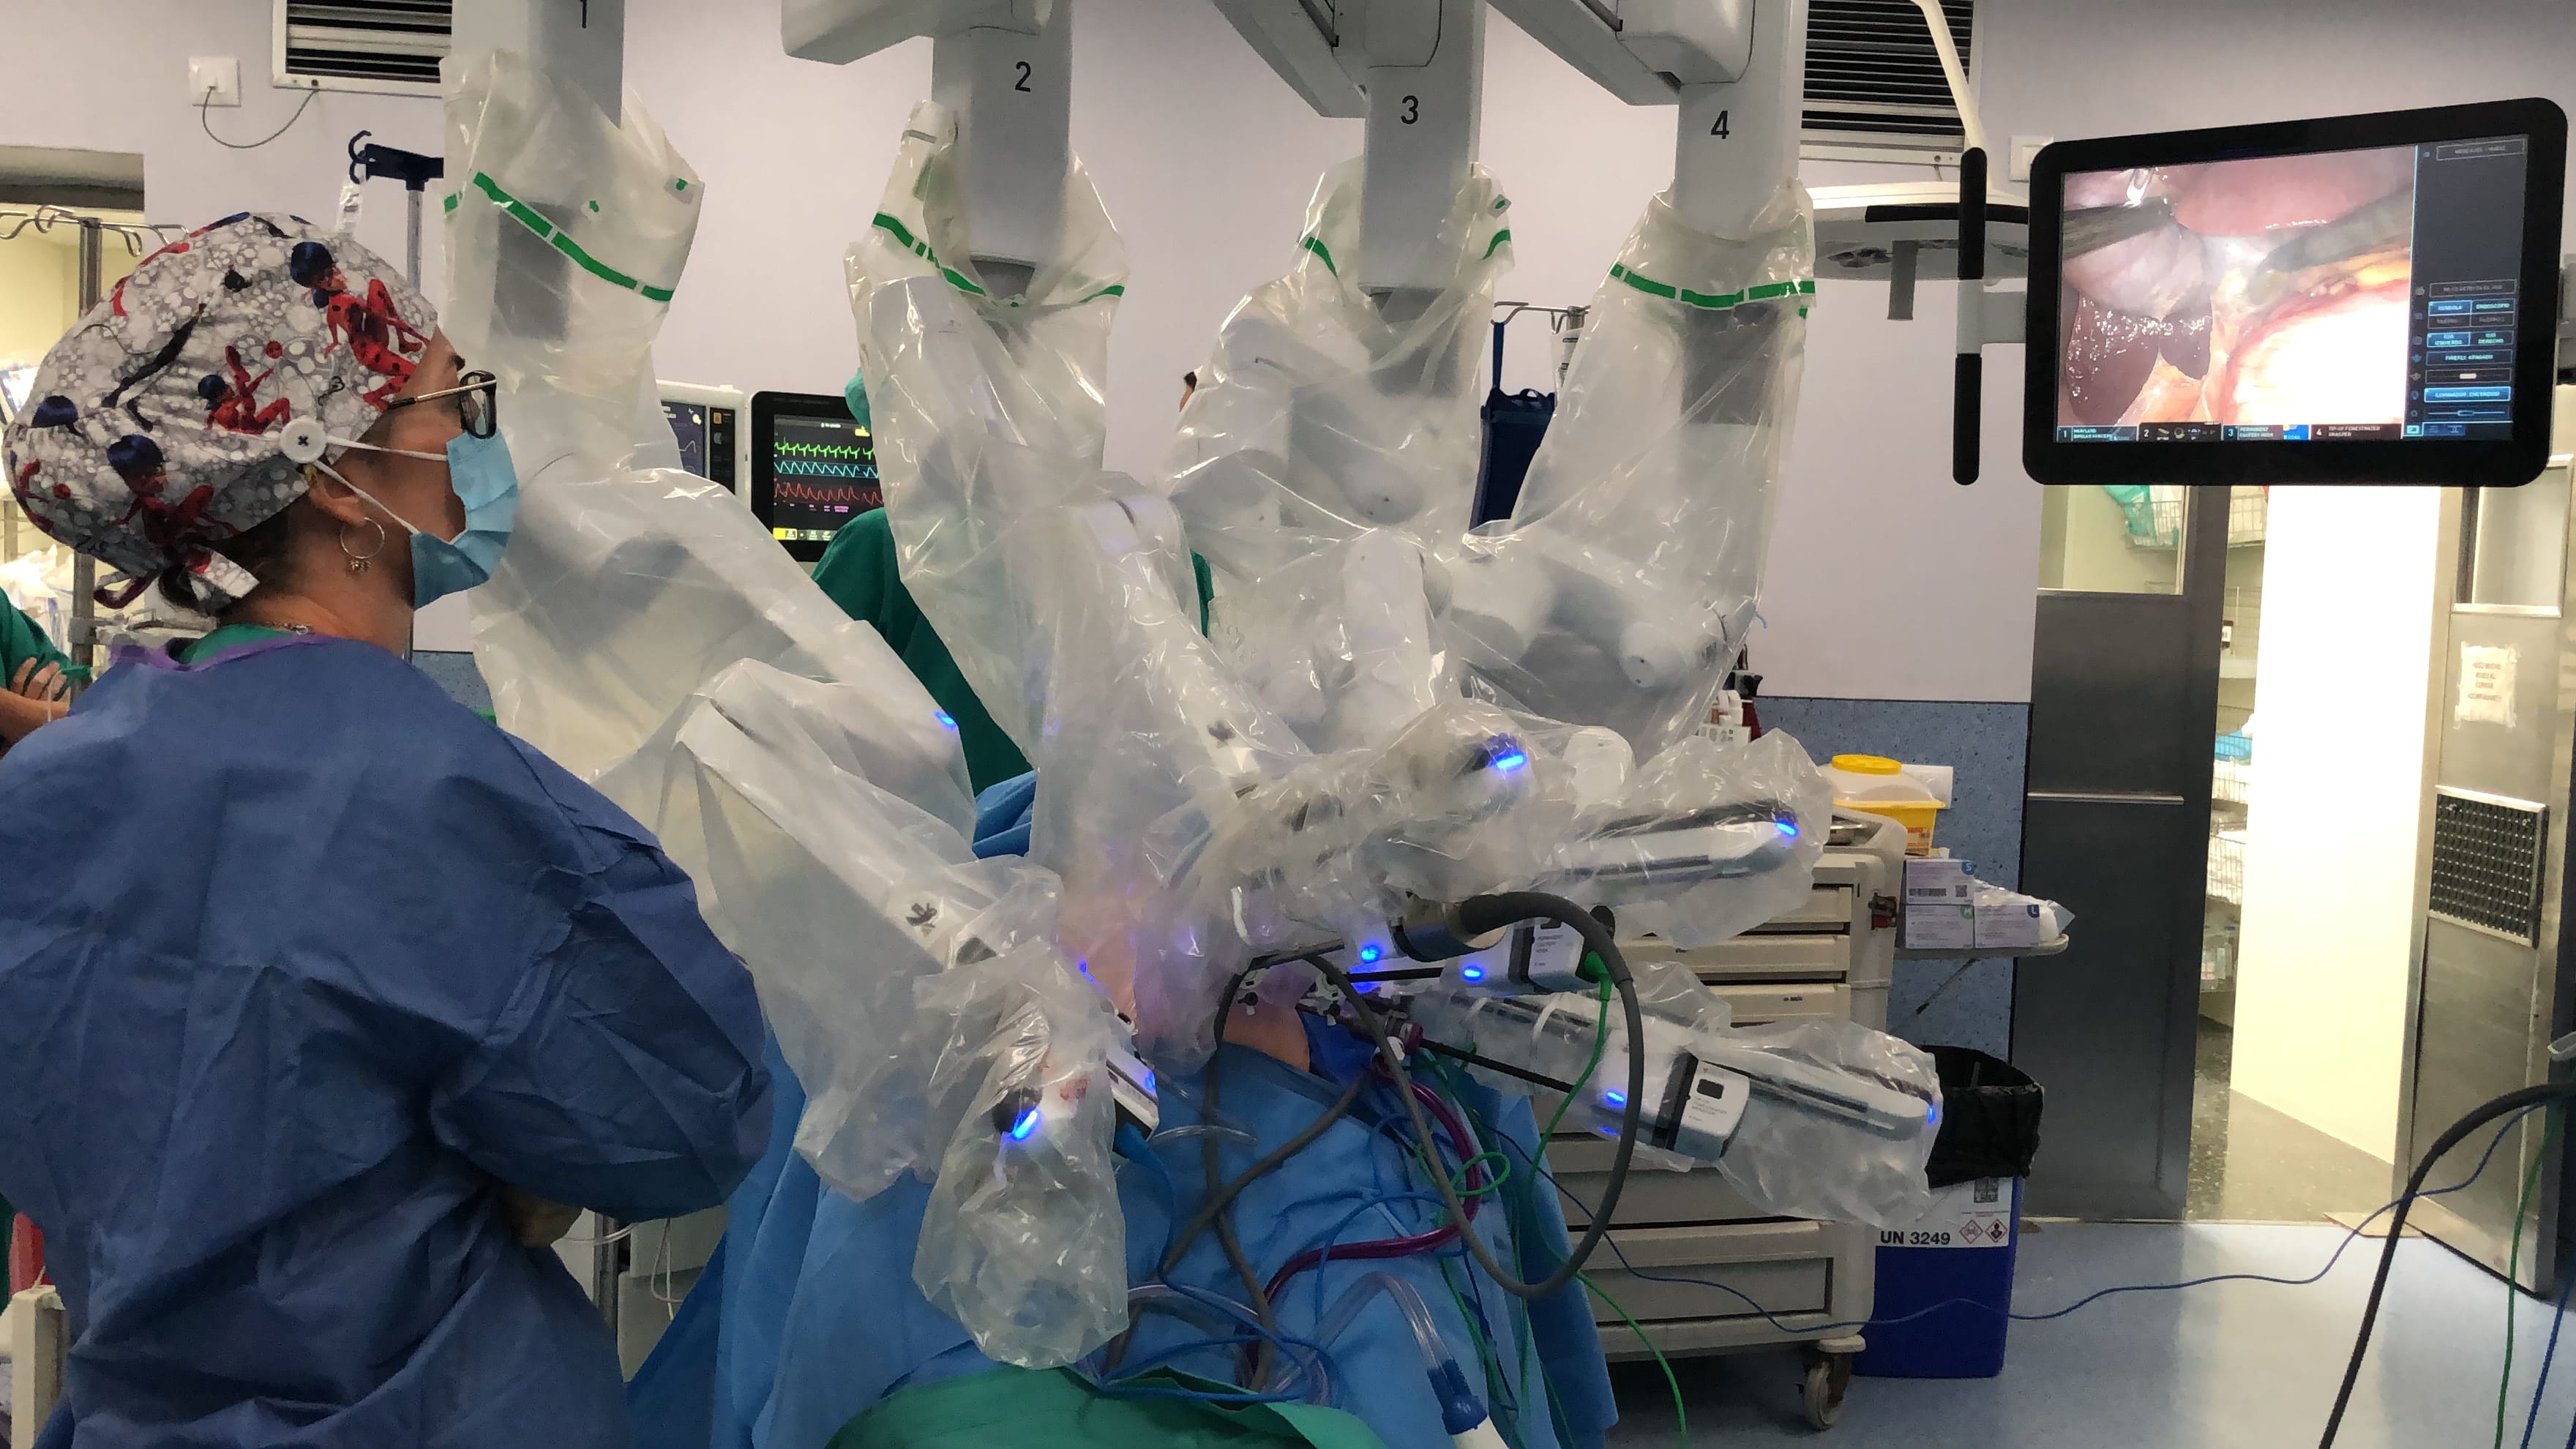 L'Hospital Doctor Peset realitza la seua primera cirurgia robòtica assistida amb el sistema quirúrgic da Vinci